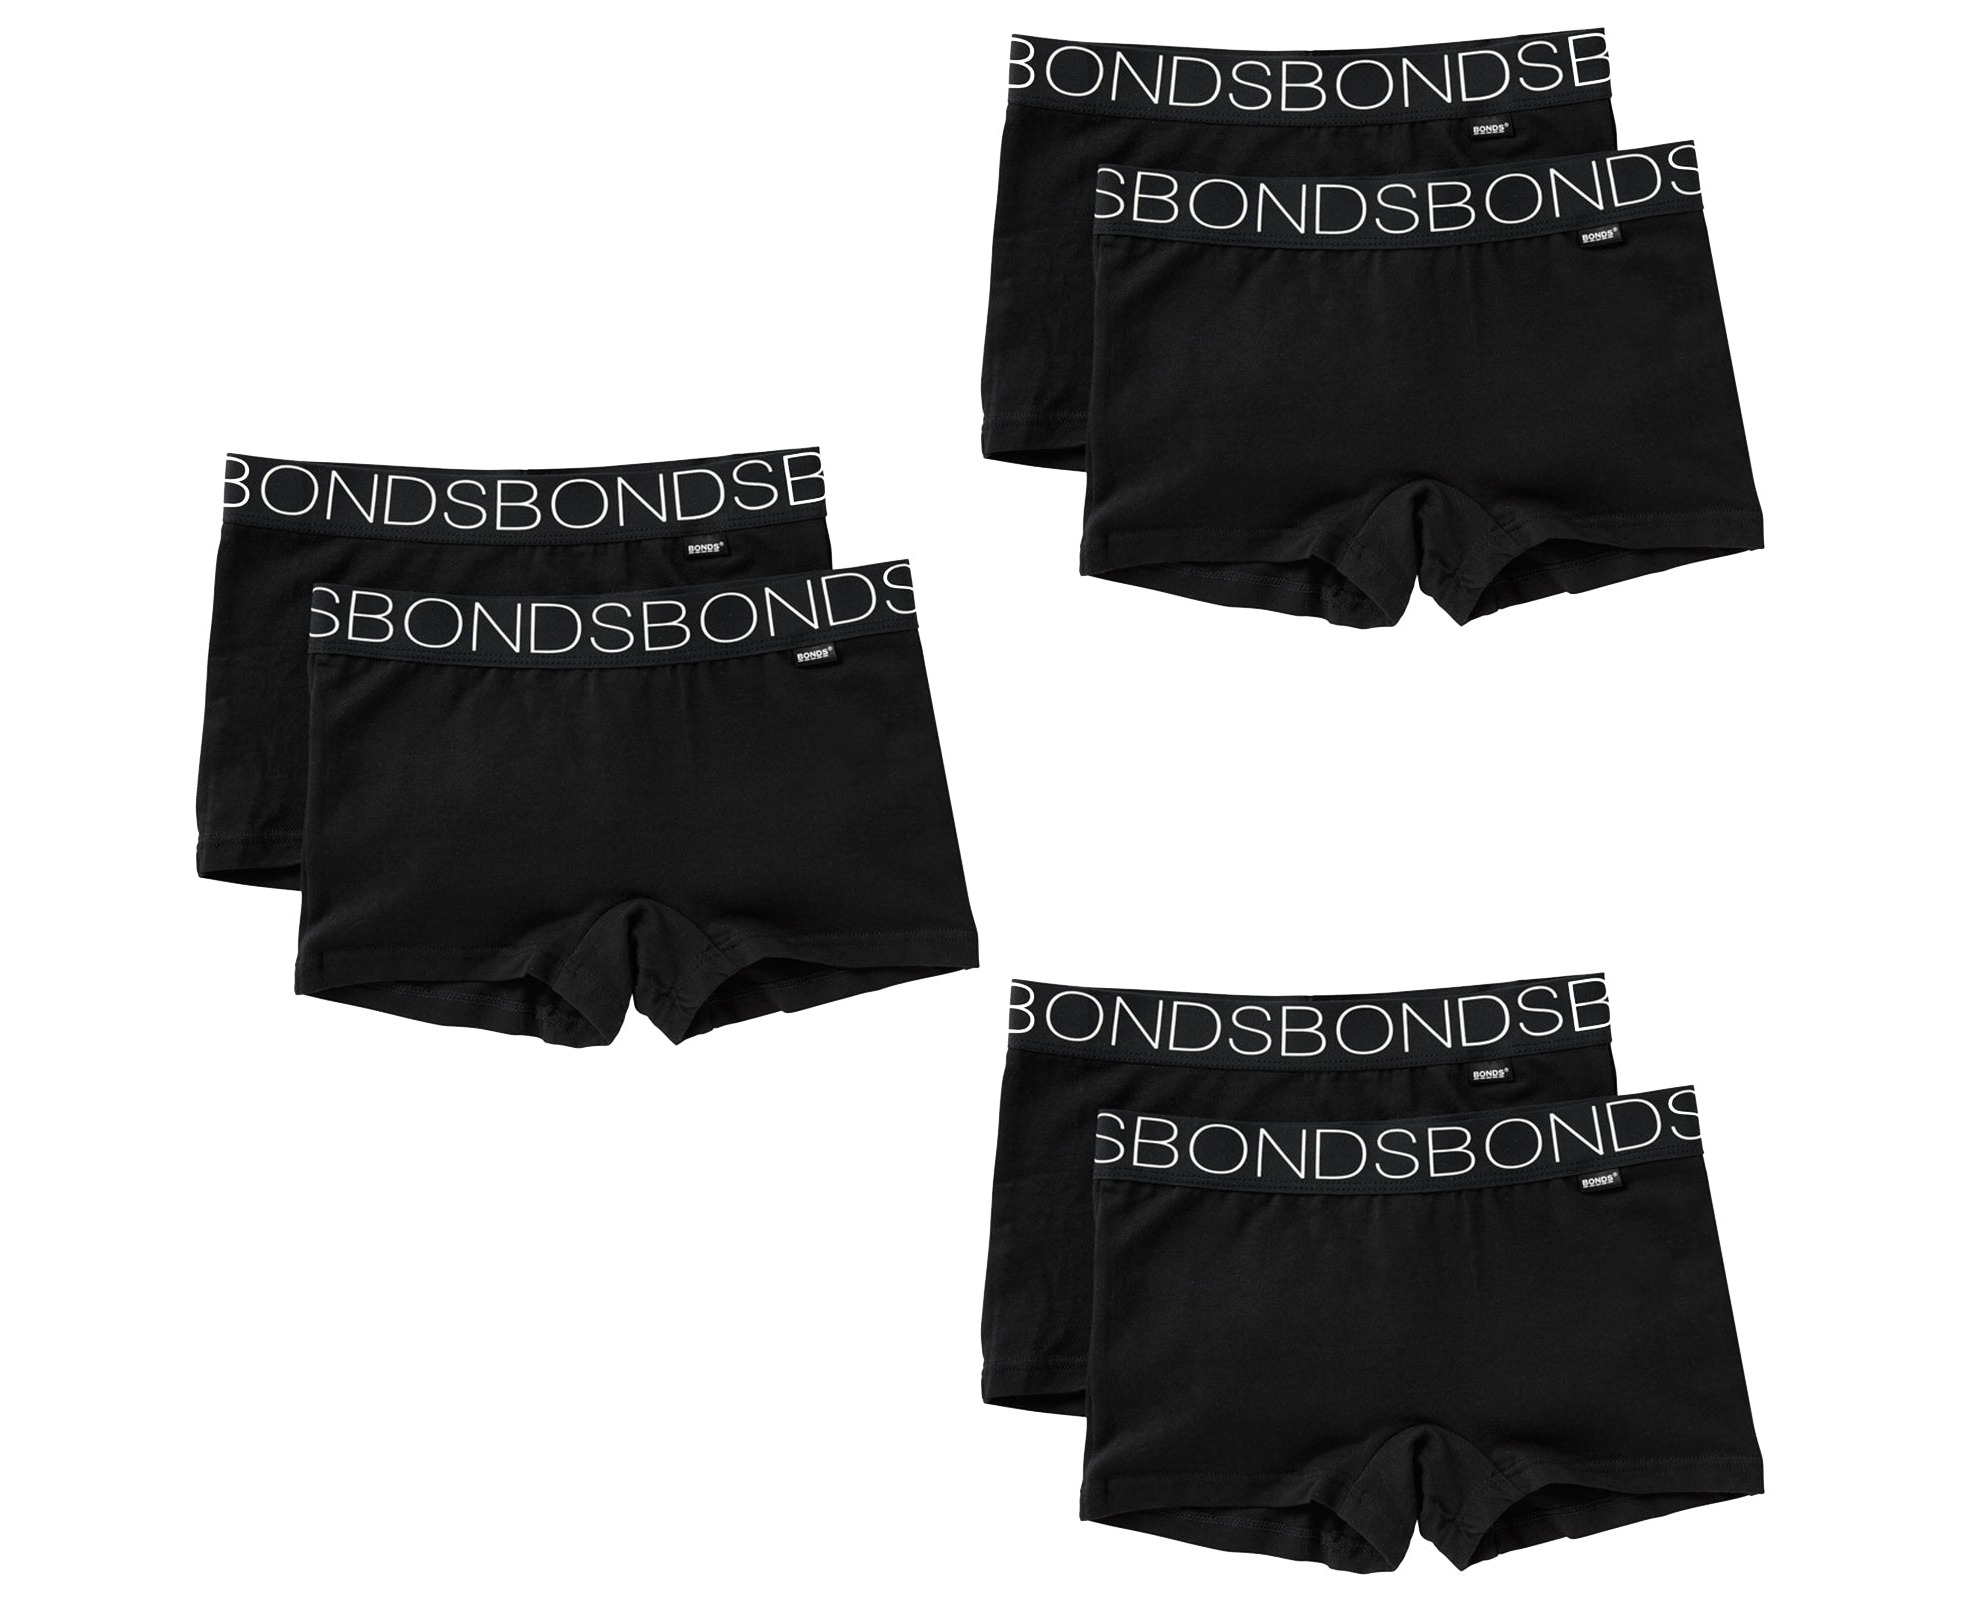 2 Pk bonds girls sports undies underwear stretchies shortie undergarment  shorts uxvd2a